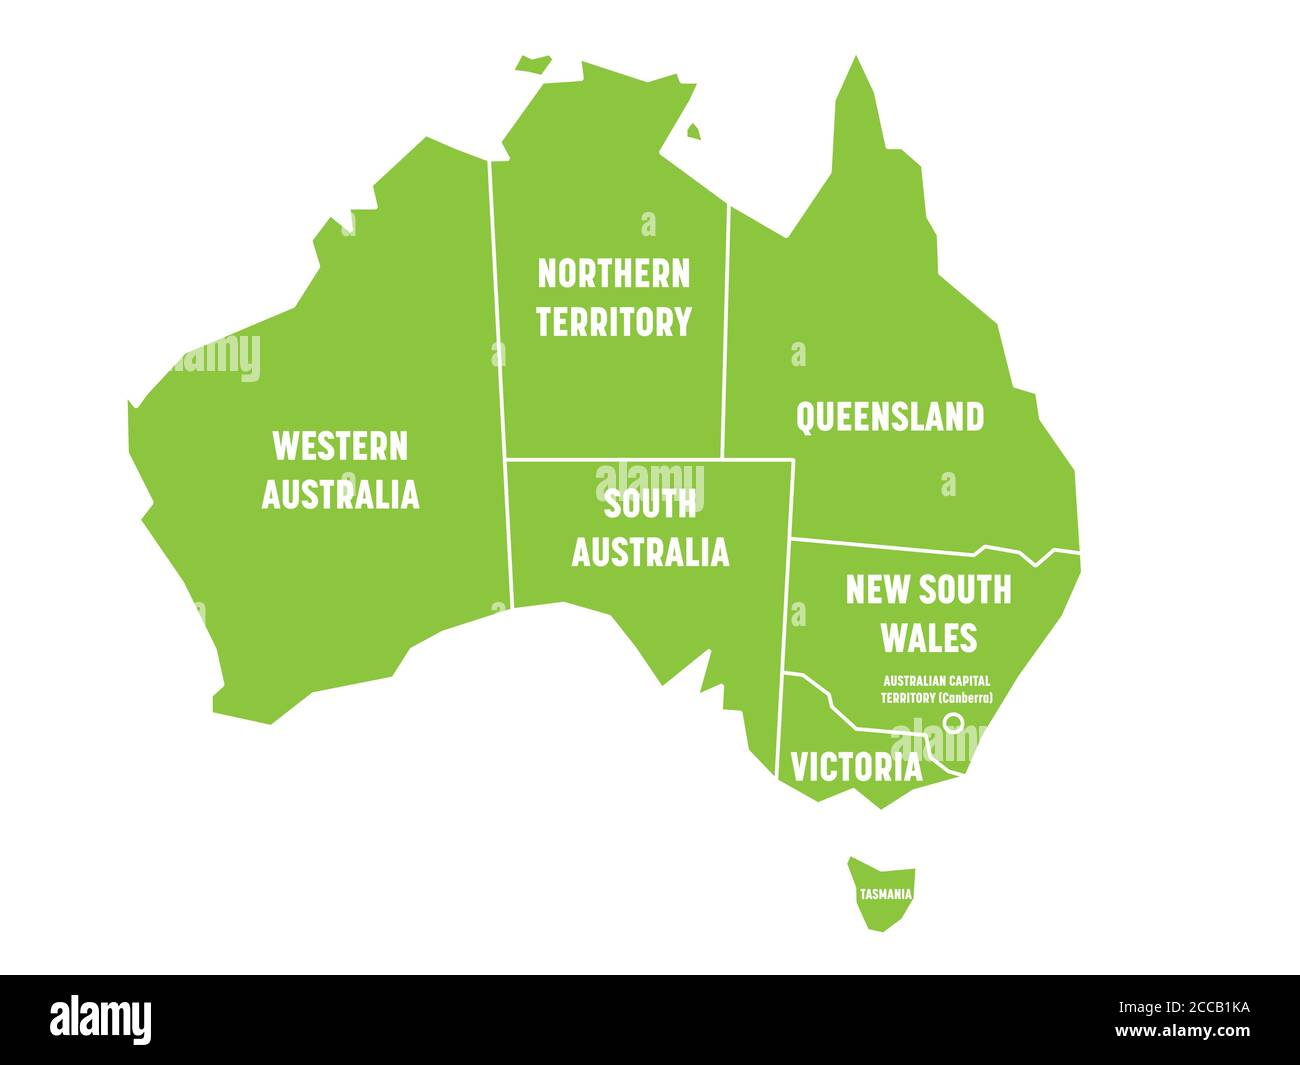 Vereinfachte Karte von Australien in Staaten und Territorien unterteilt. Grüne flache Karte mit weißen Rändern und weißen Etiketten. Vektorgrafik. Stock Vektor